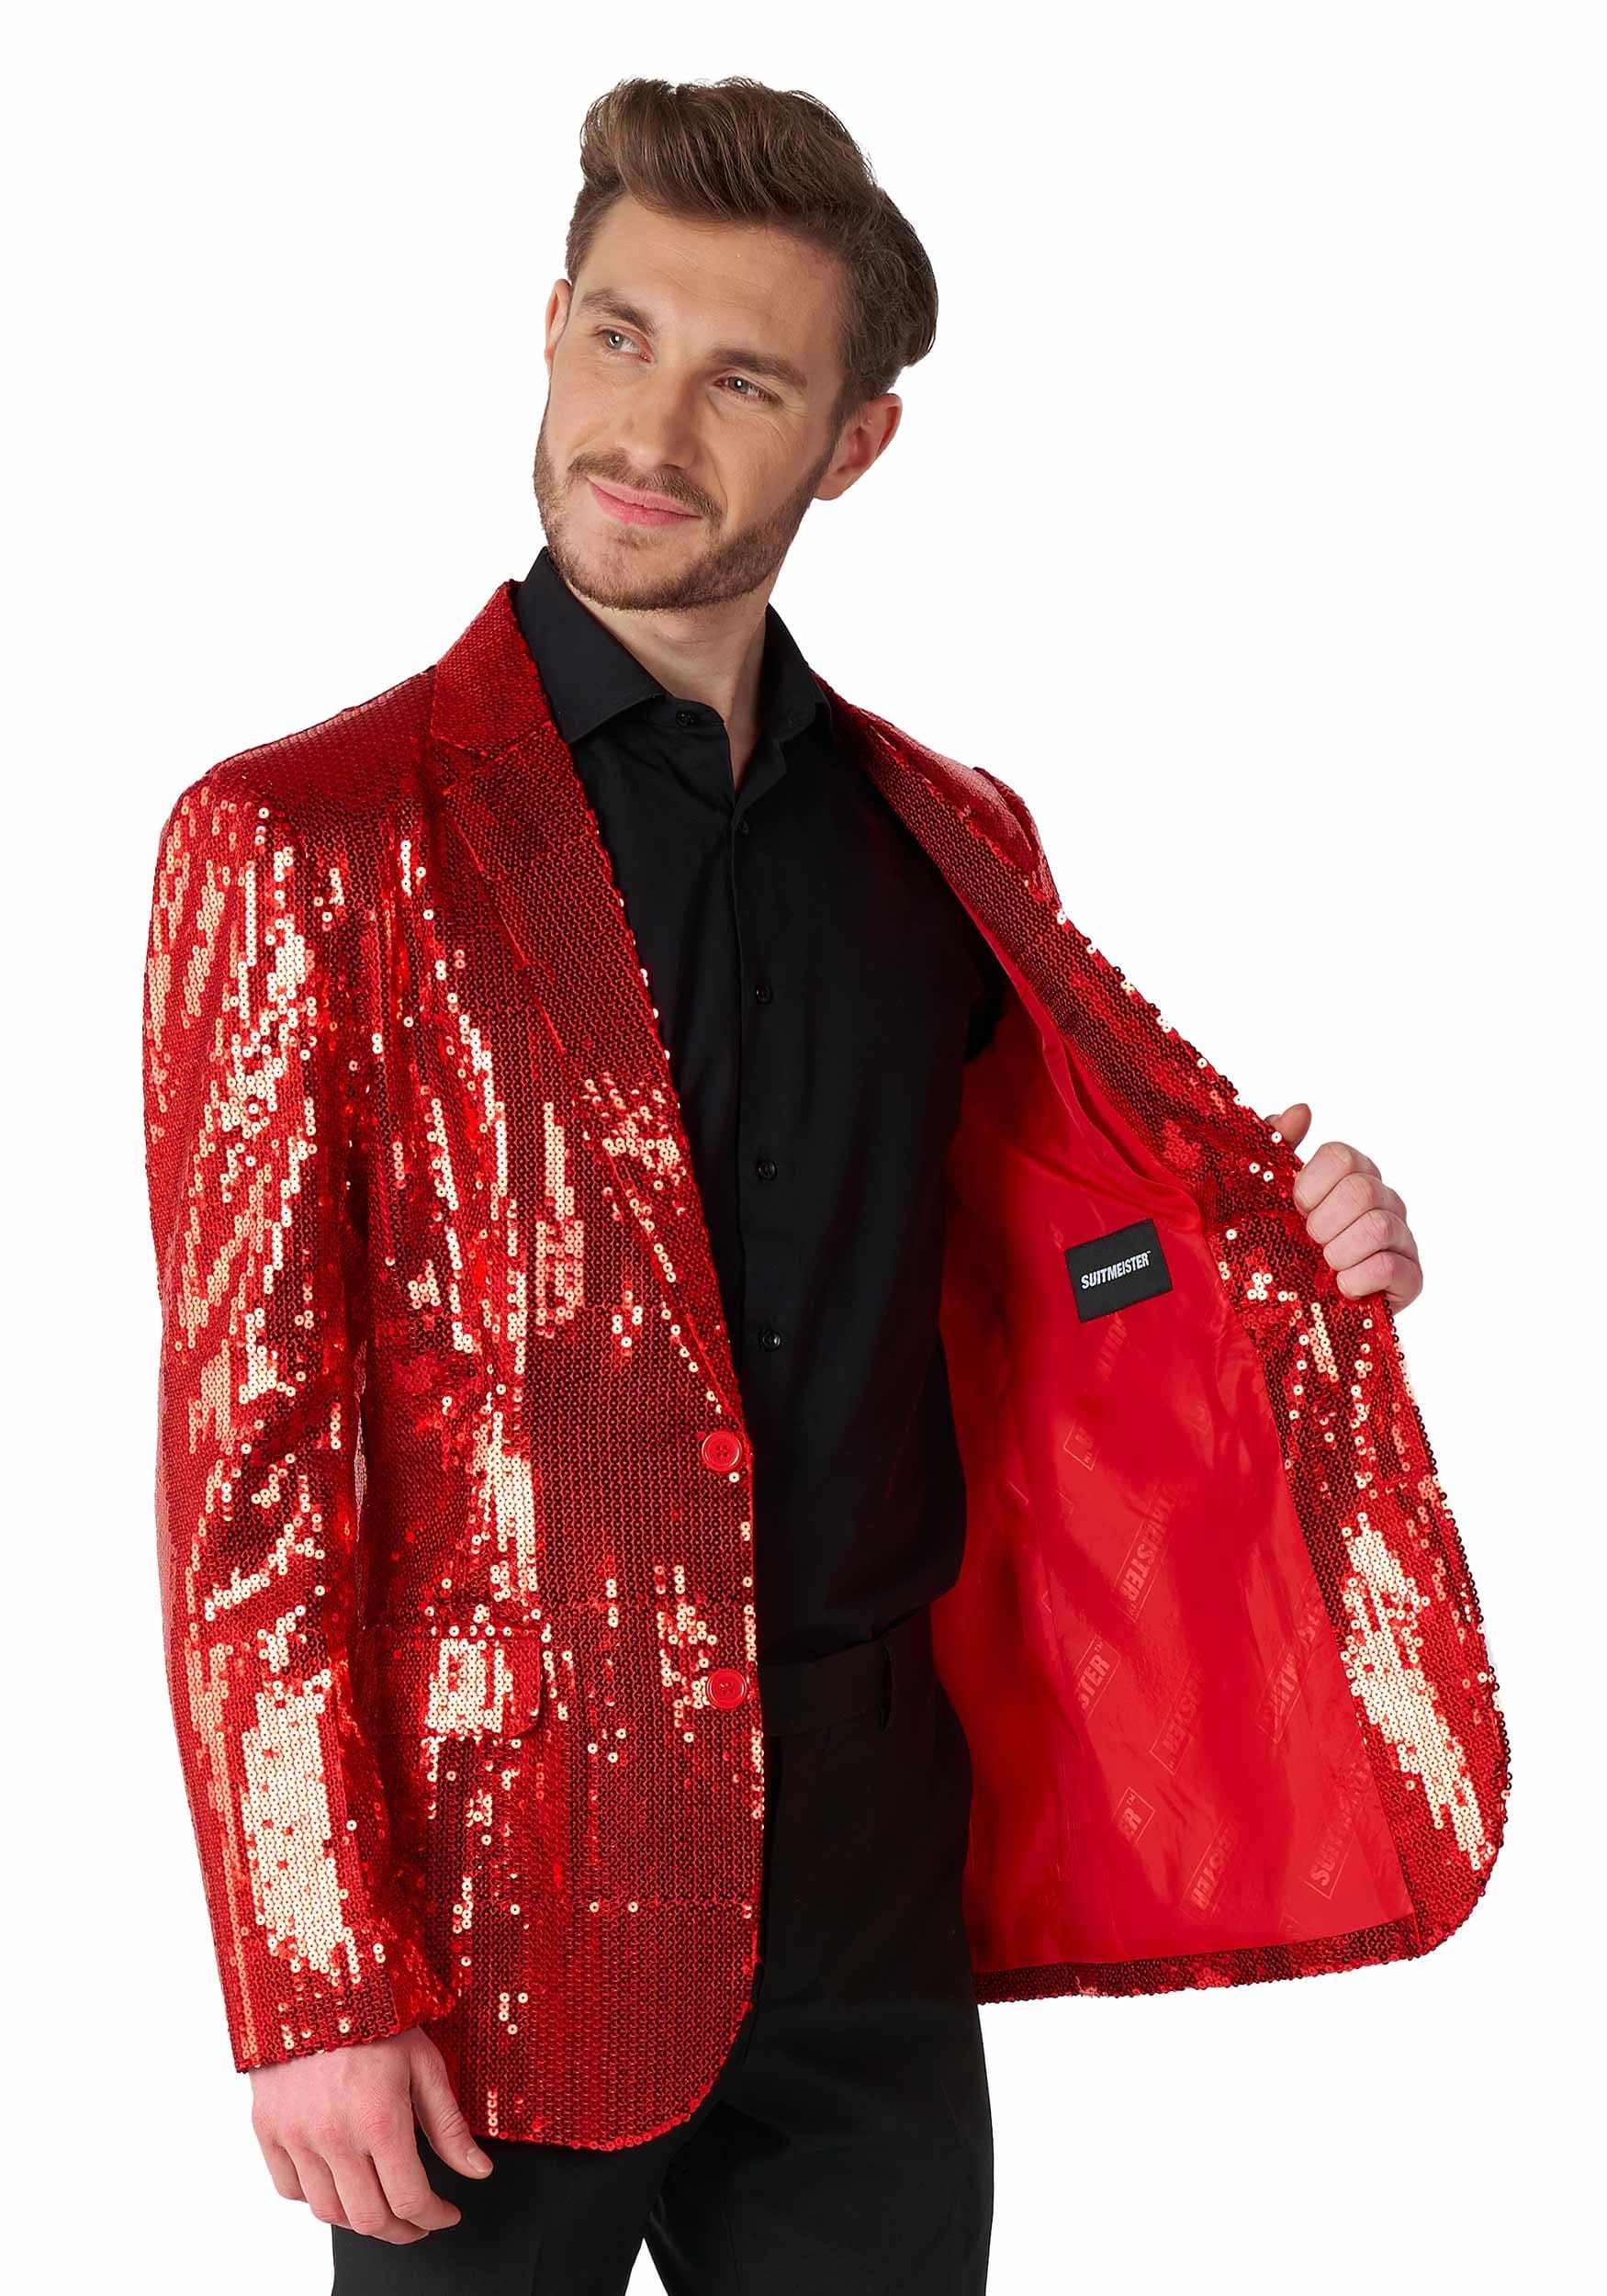 Betrokken een experiment doen Achterhouden Suitmeister Men's Red Sequins Blazer